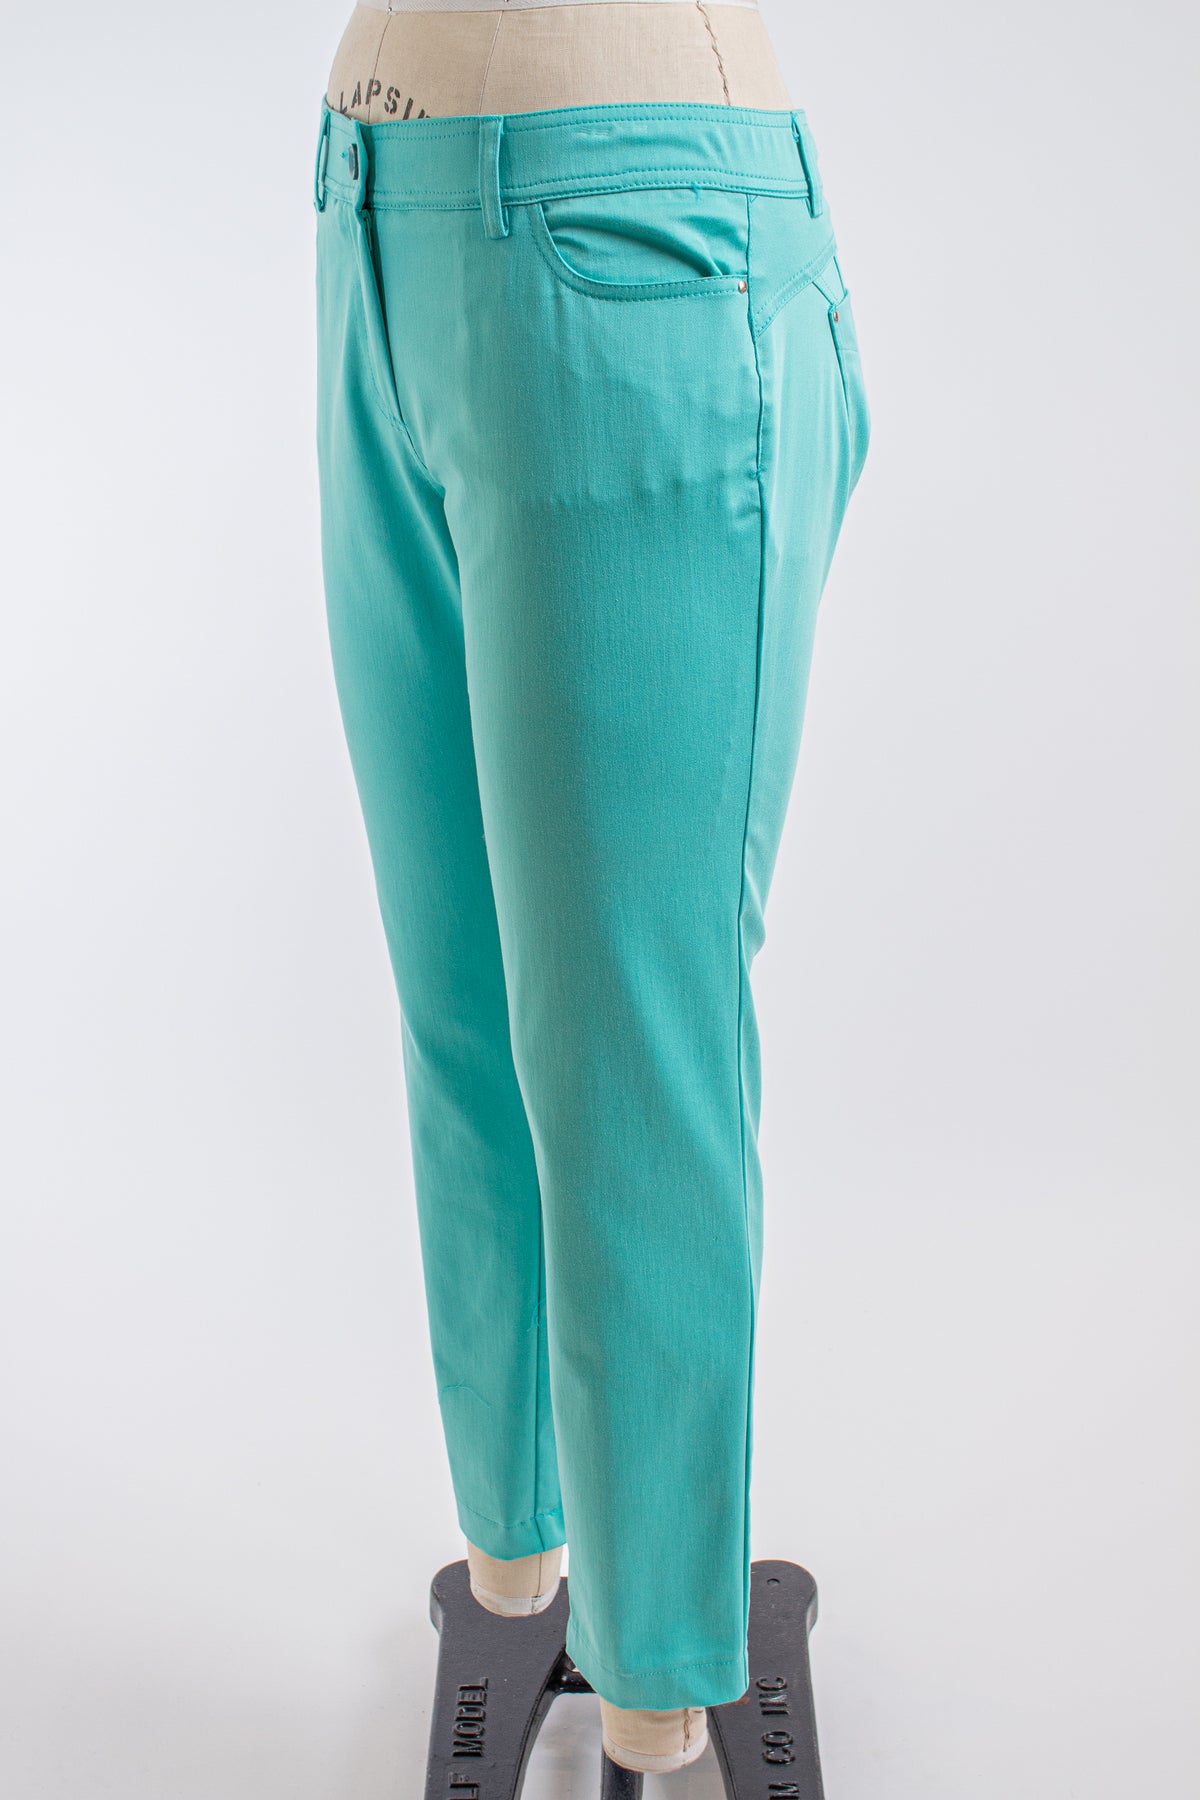 Seafoam Green Pants – Cynthia Elliot Boutique